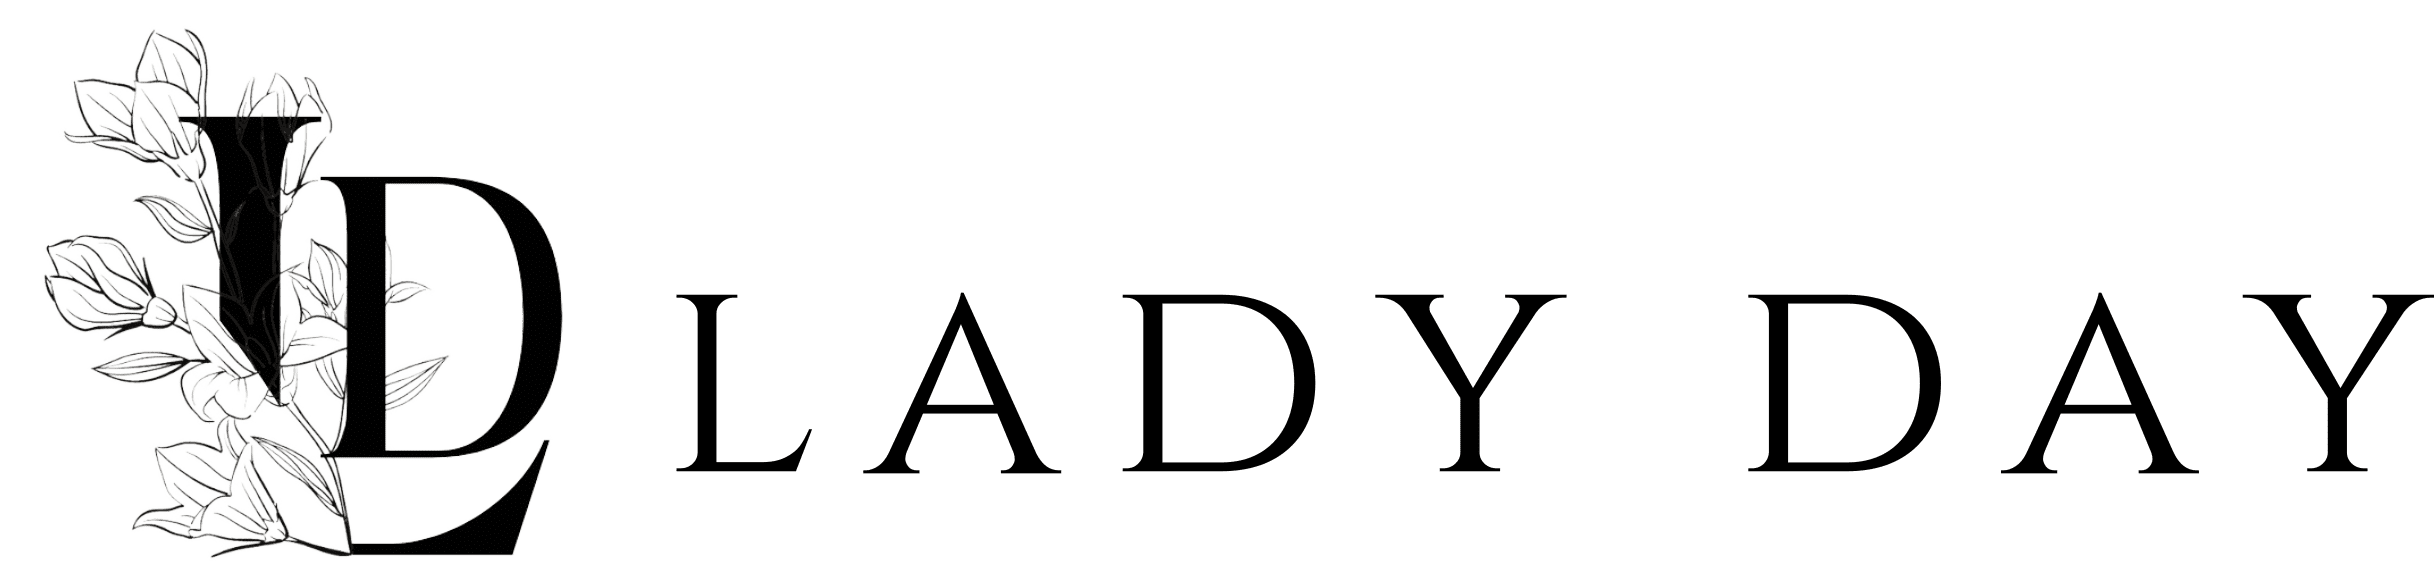 logo-lady-day-ok